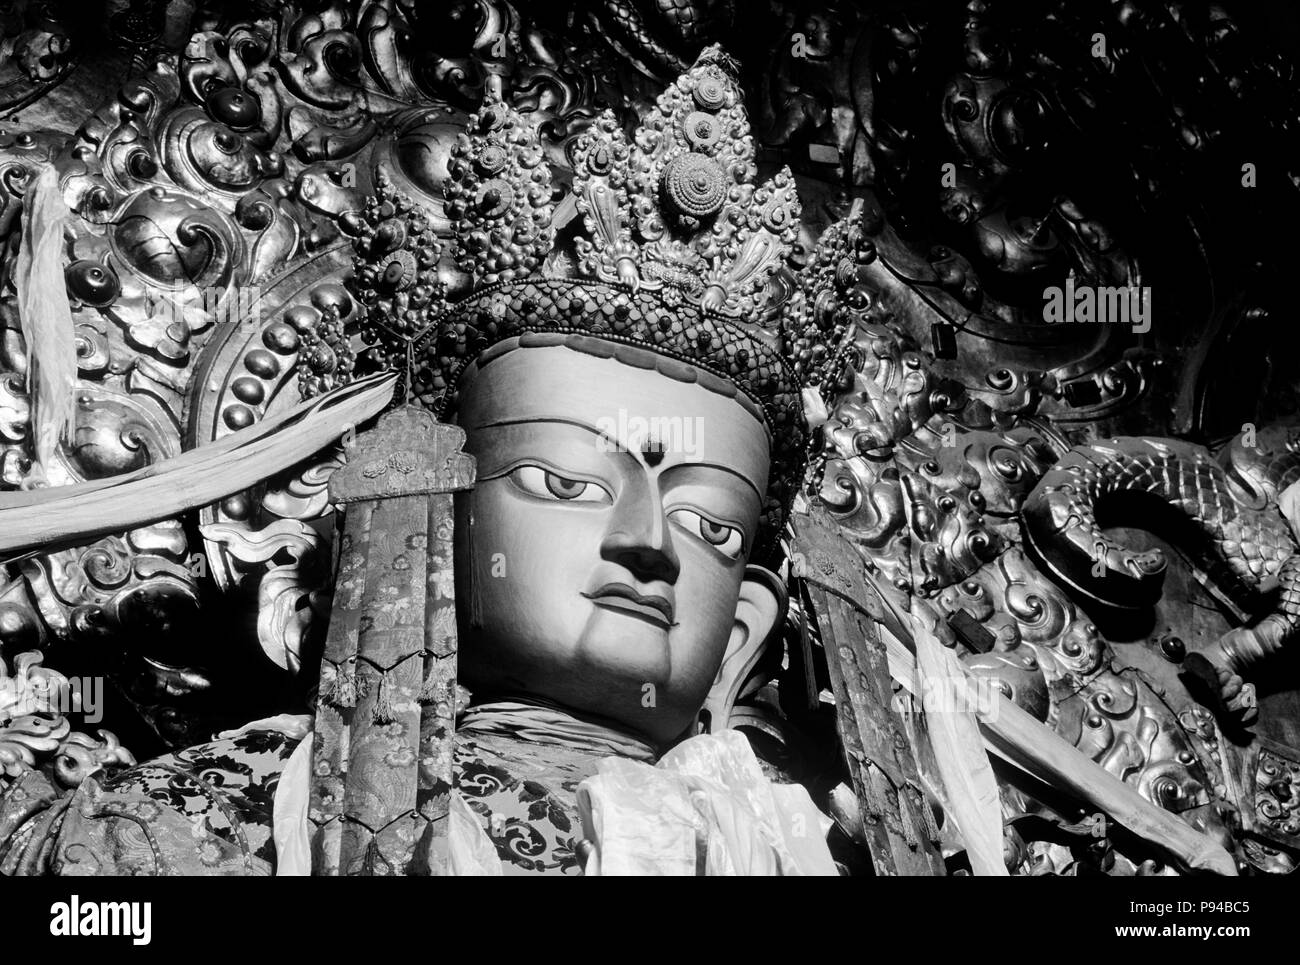 Beau joyau incrustés, STATUE DE MAITREYA (futur Bouddha) dans la grande salle au monastère de Drepung Banque D'Images